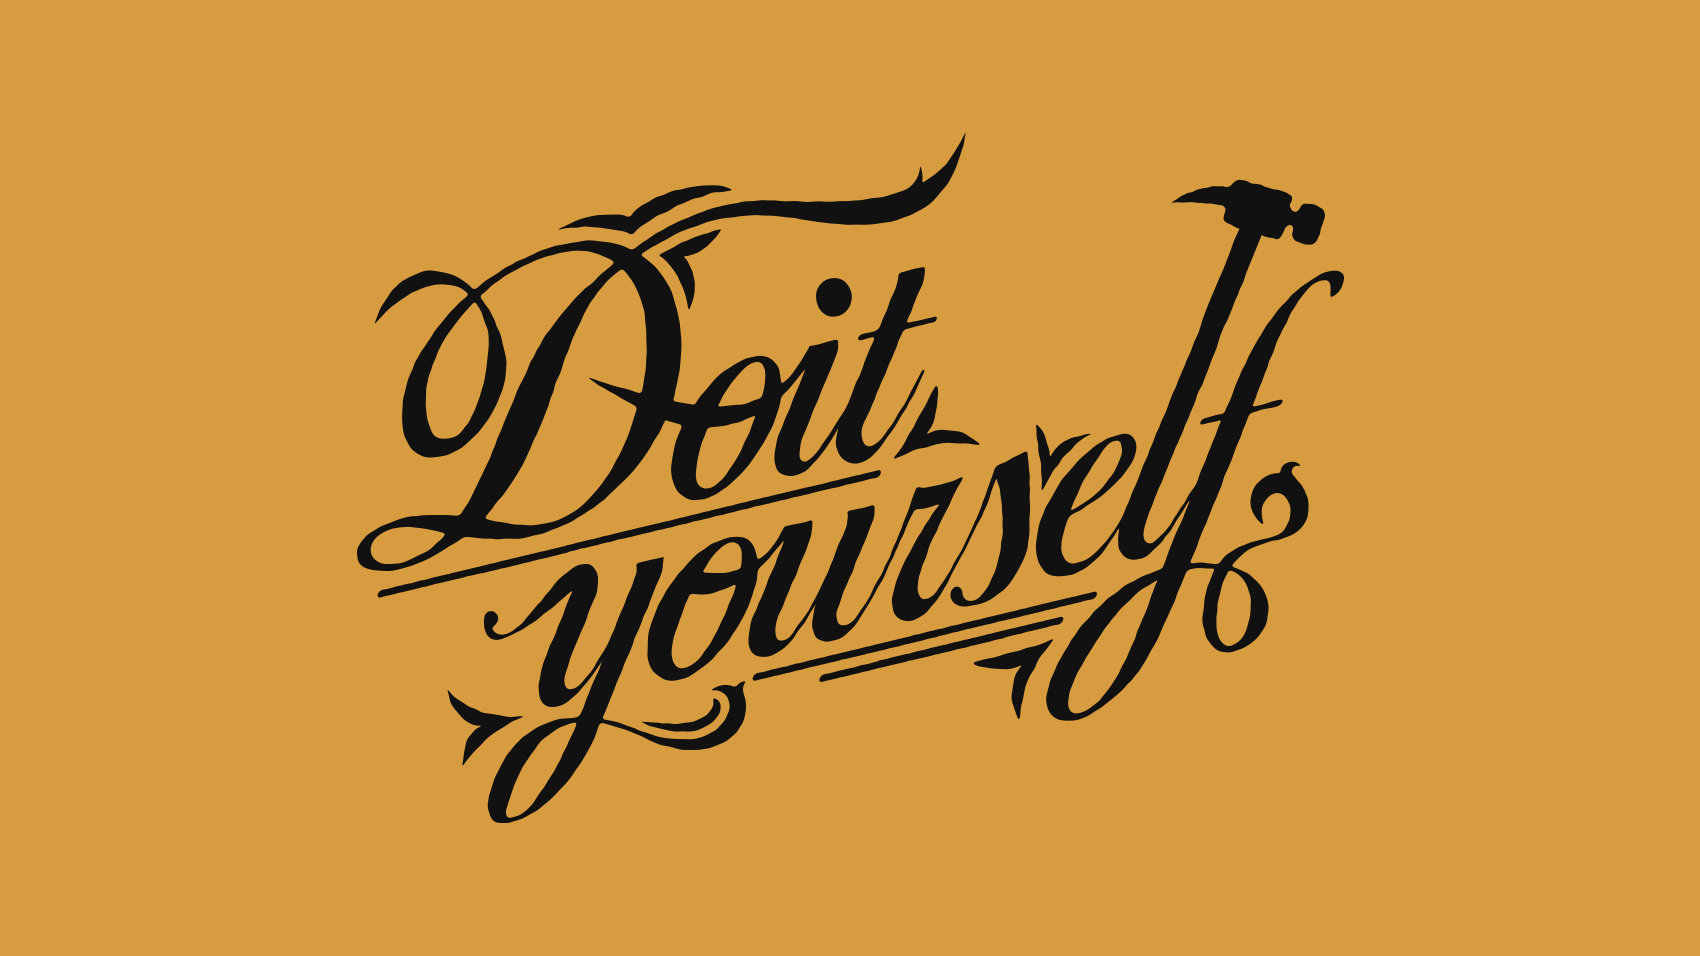 道具を交えながらつくる「Do It Yourself」のカリグラフィデザイン